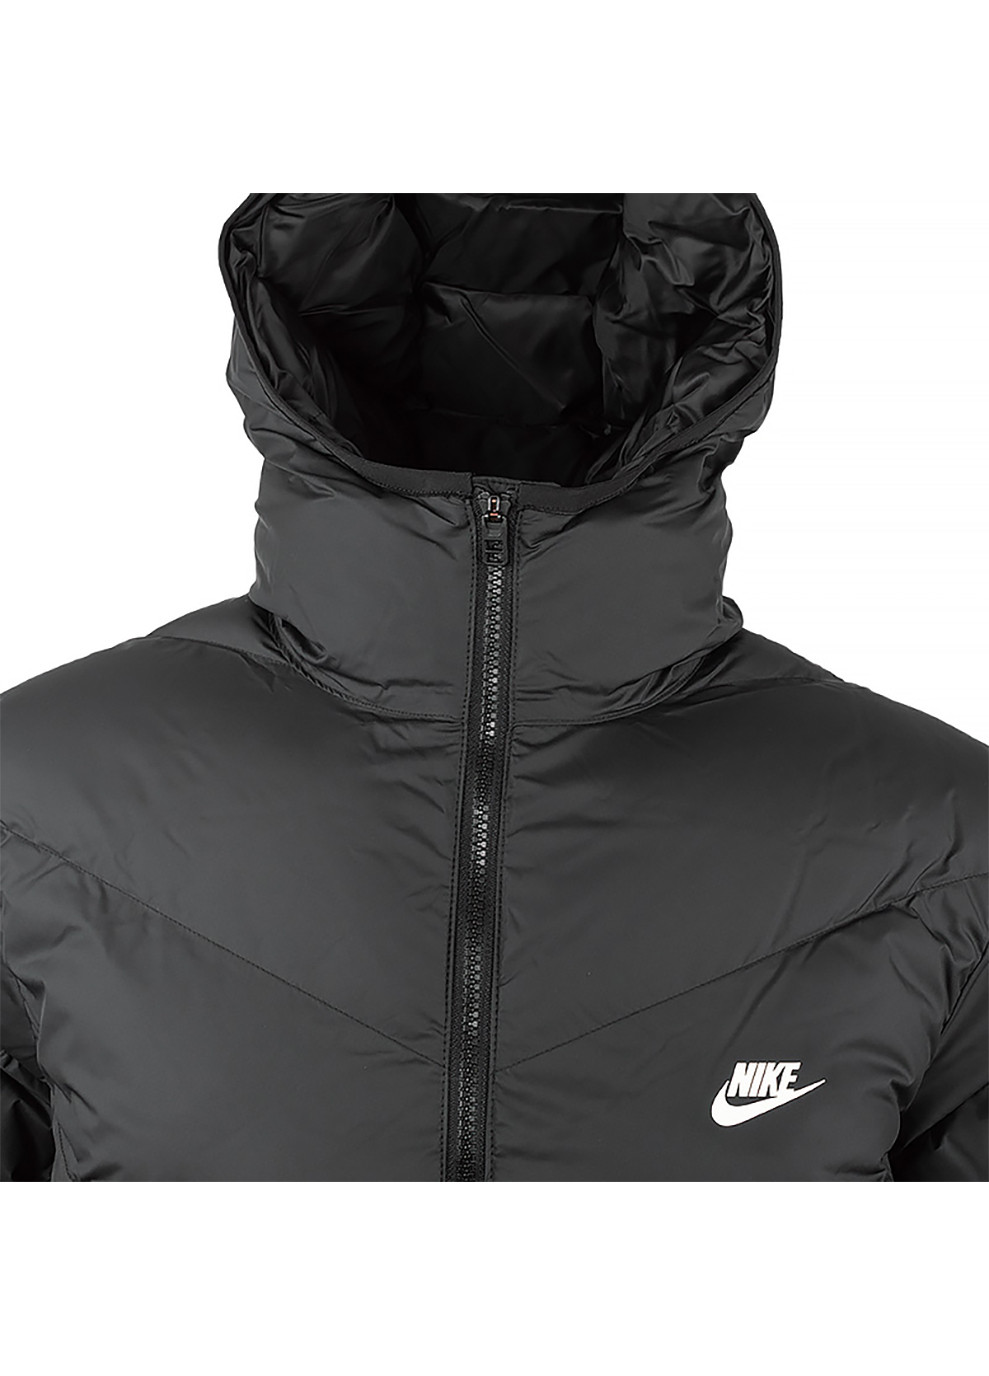 Чорна демісезонна чоловіча куртка m nk sf wr pl-fld hd parka чорний m (dr9609-010 m) Nike